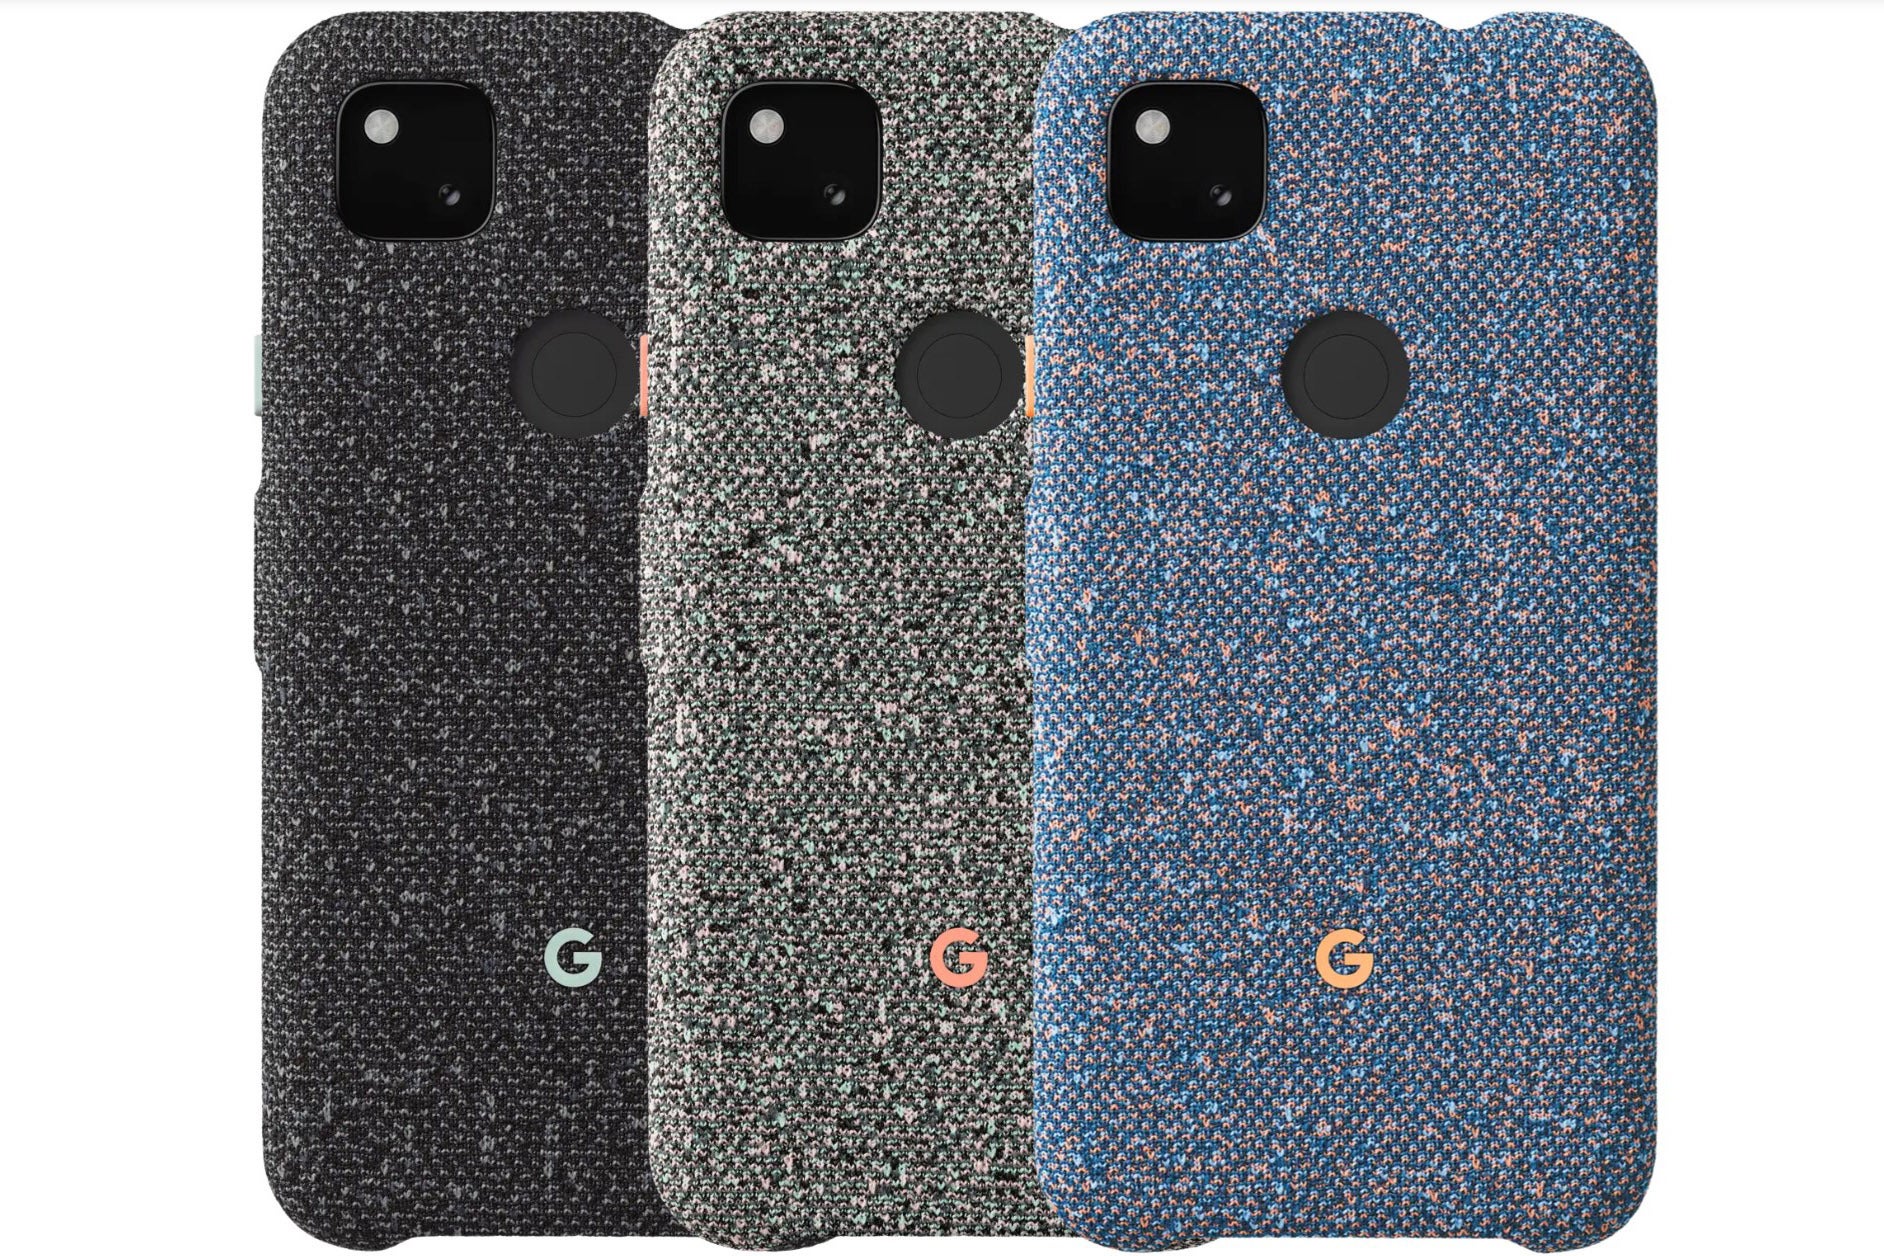 Google Pixel 4a Fabric Case colors - Best Google Pixel 4a cases